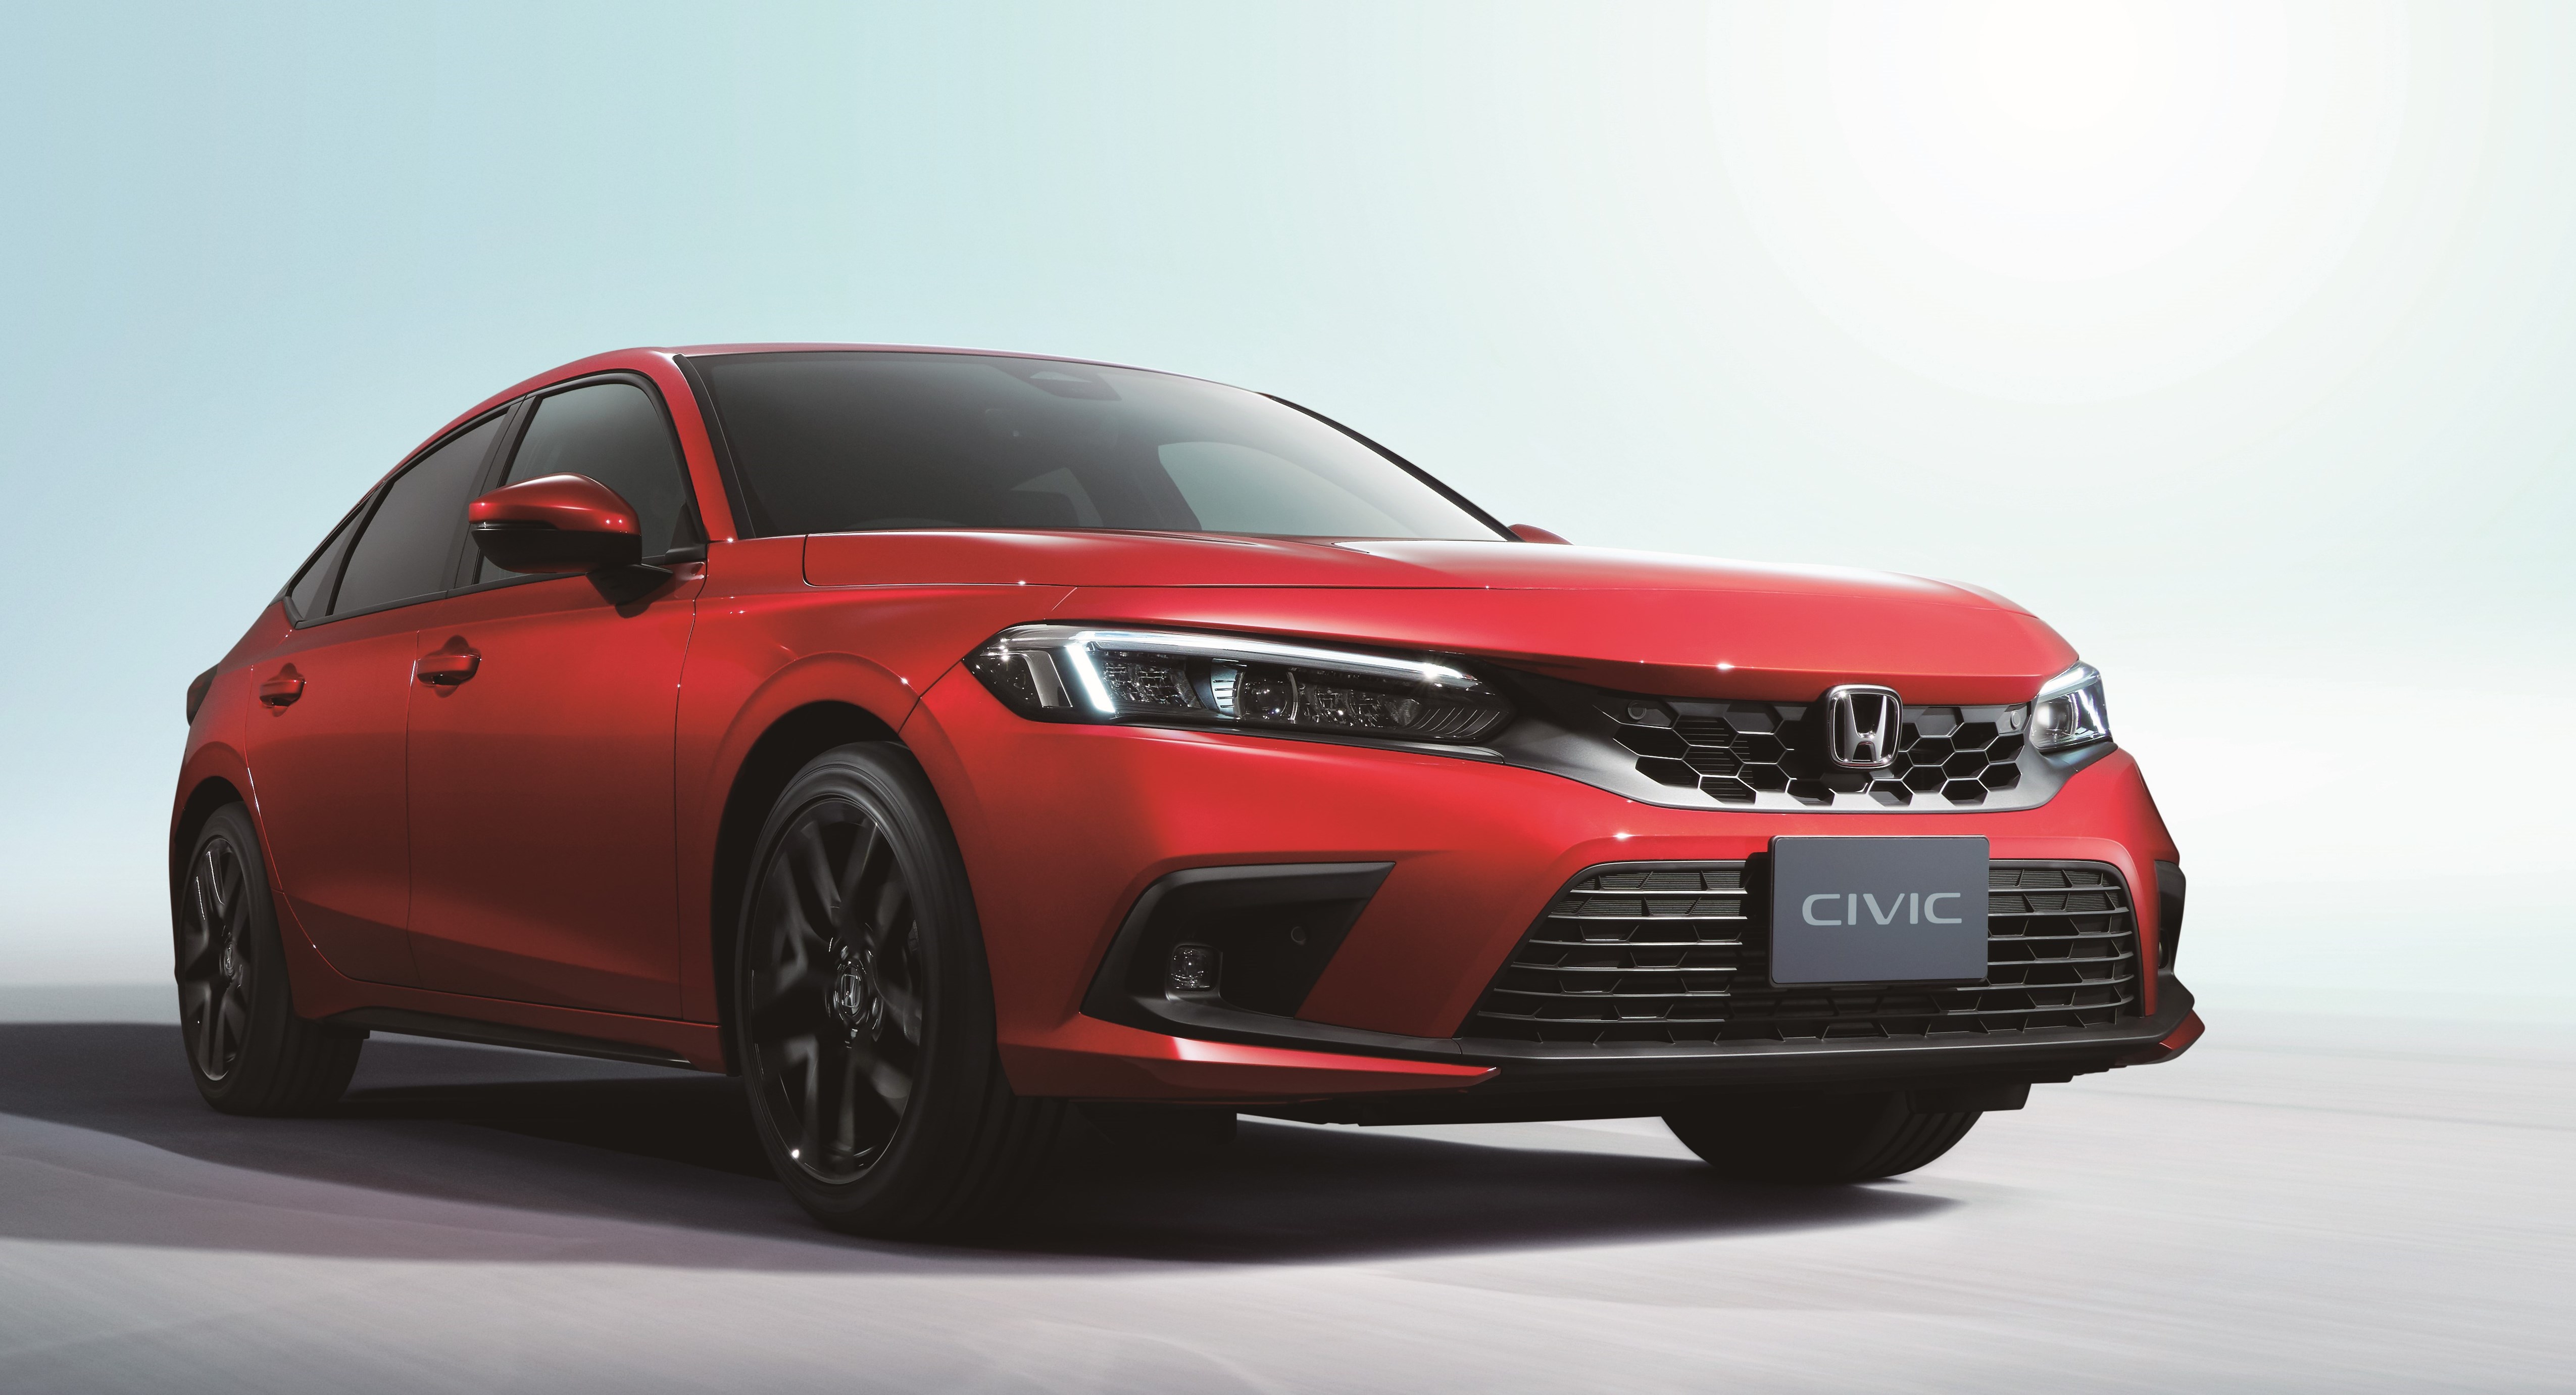 Fonkelnieuwe Civic krijgt hybridetechniek